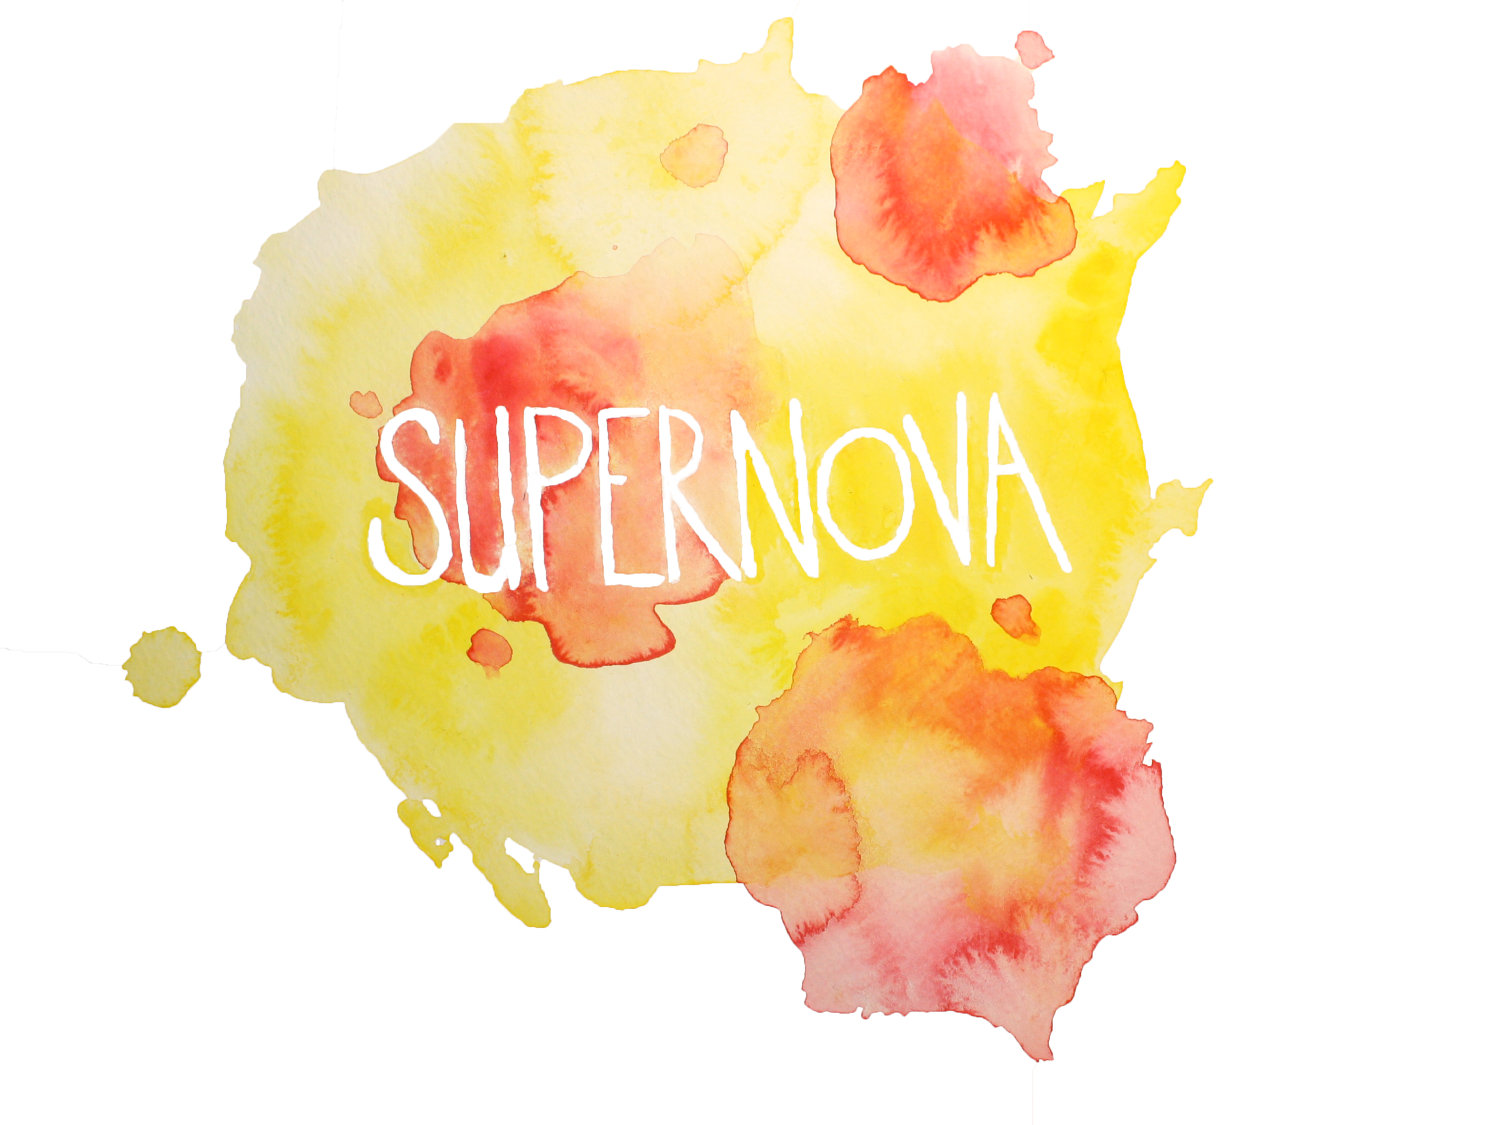 Supernova by Amanda Brown of Brown Bear Studios